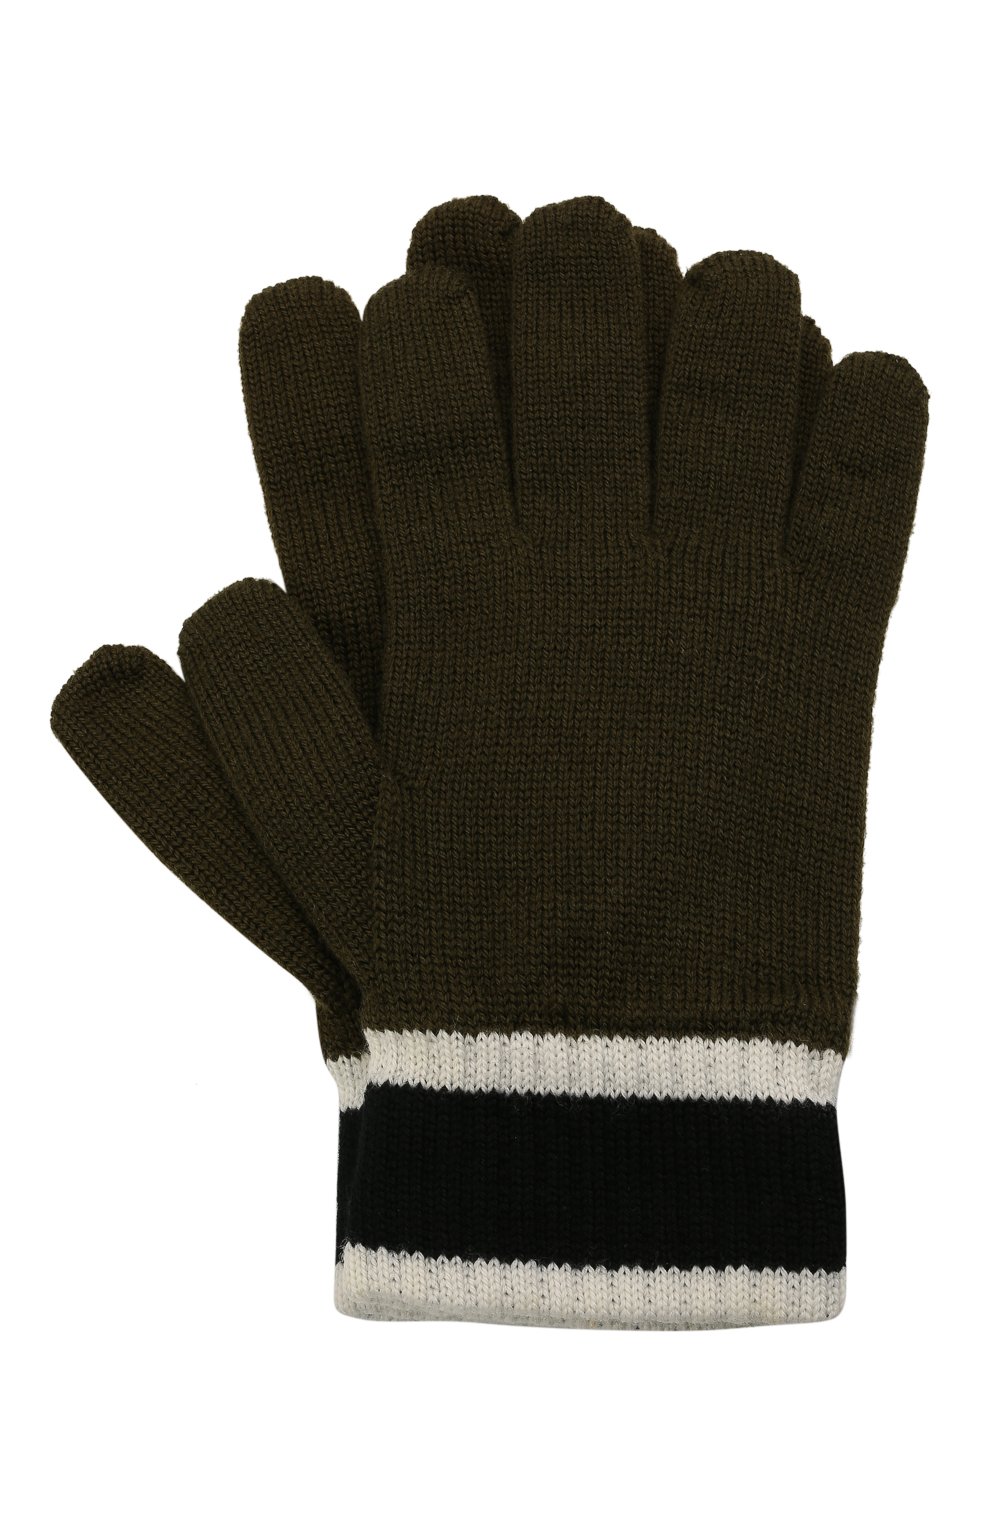 Детские шерстяные перчатки EMPORIO ARMANI хаки цвета, арт. 404638/1A494 | Фото 1 (Материал: Текстиль, Шерсть)